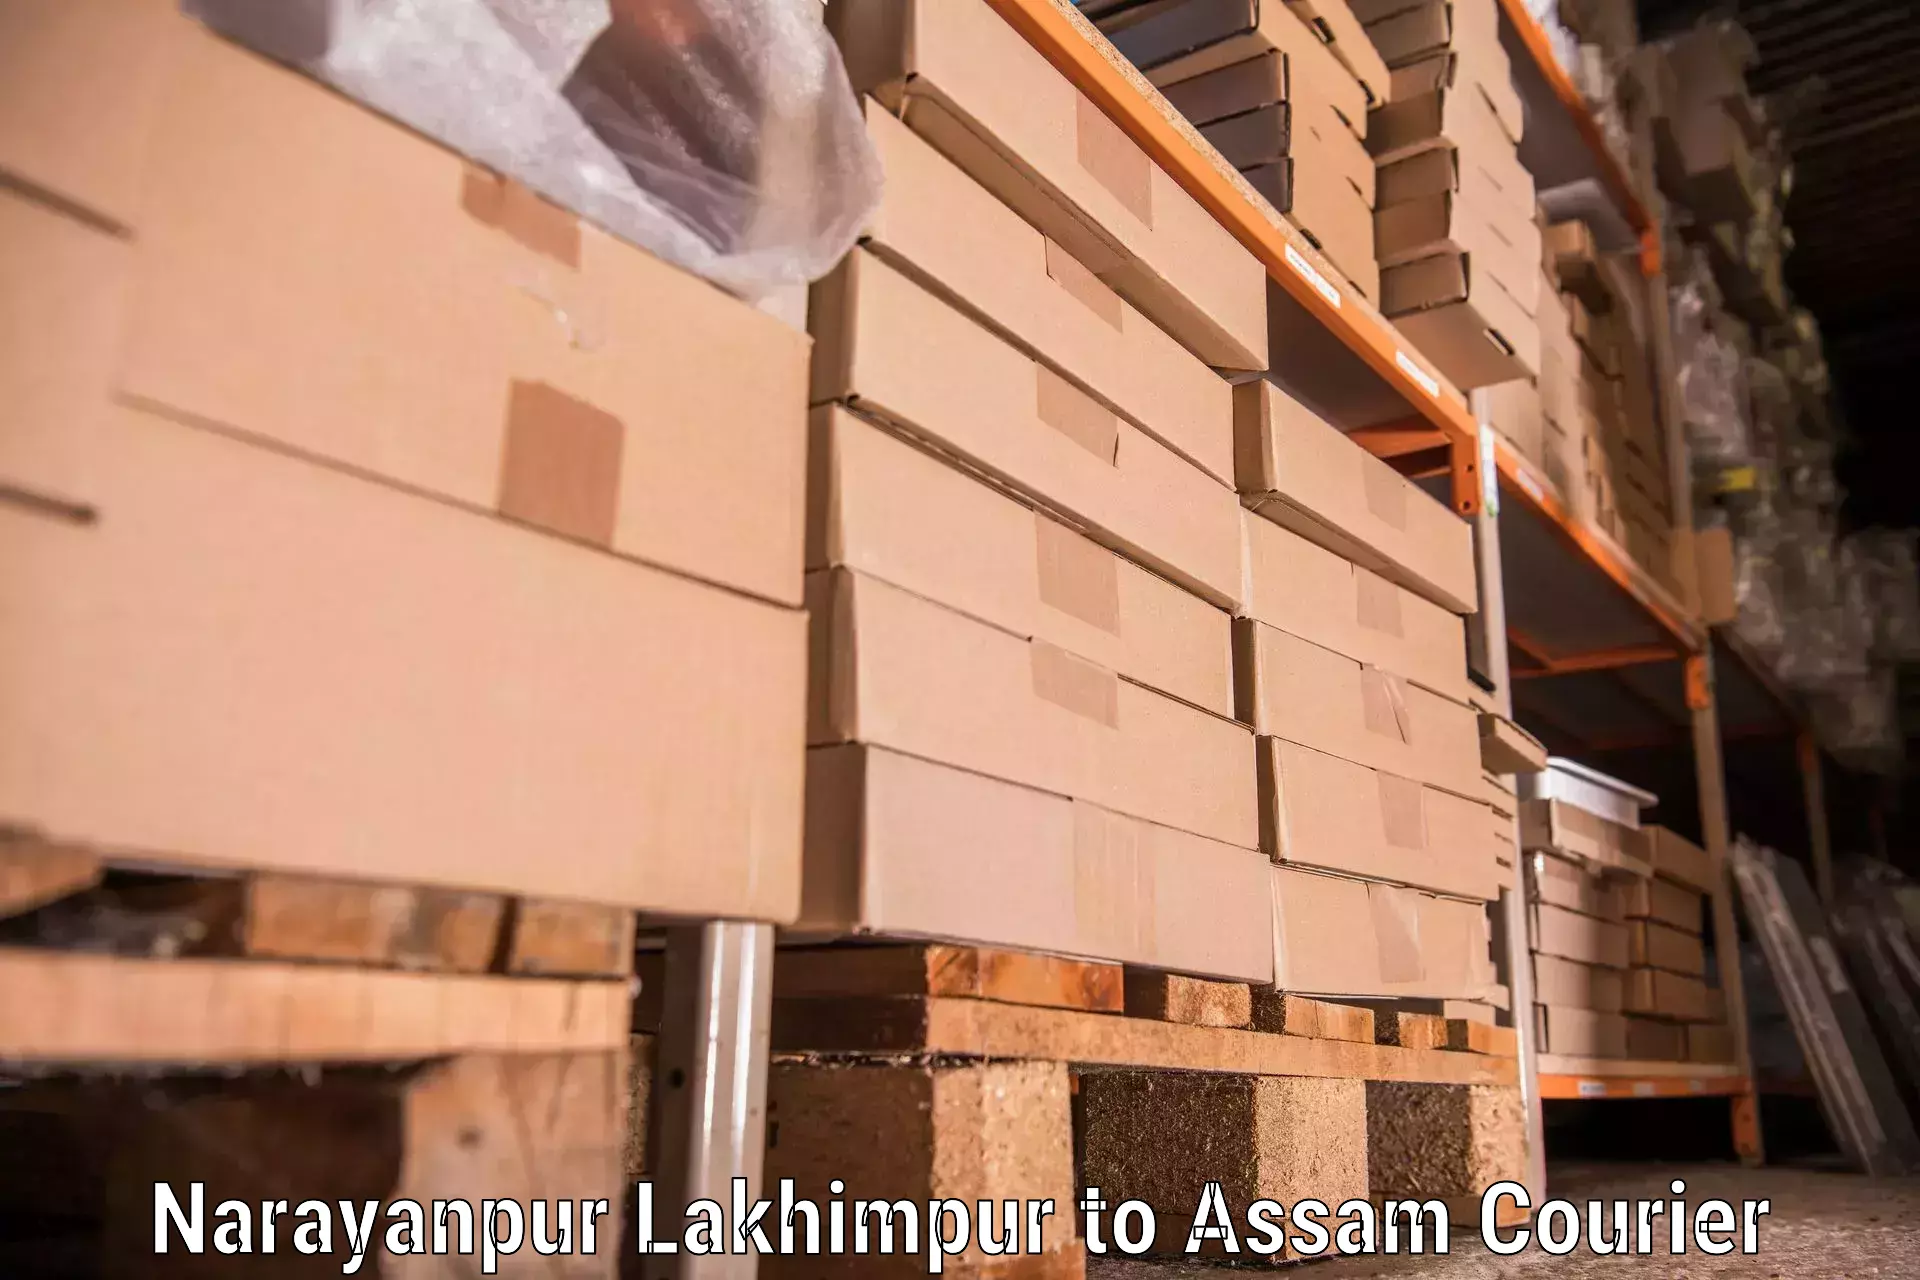 Trusted furniture transport in Narayanpur Lakhimpur to Kalaigaon